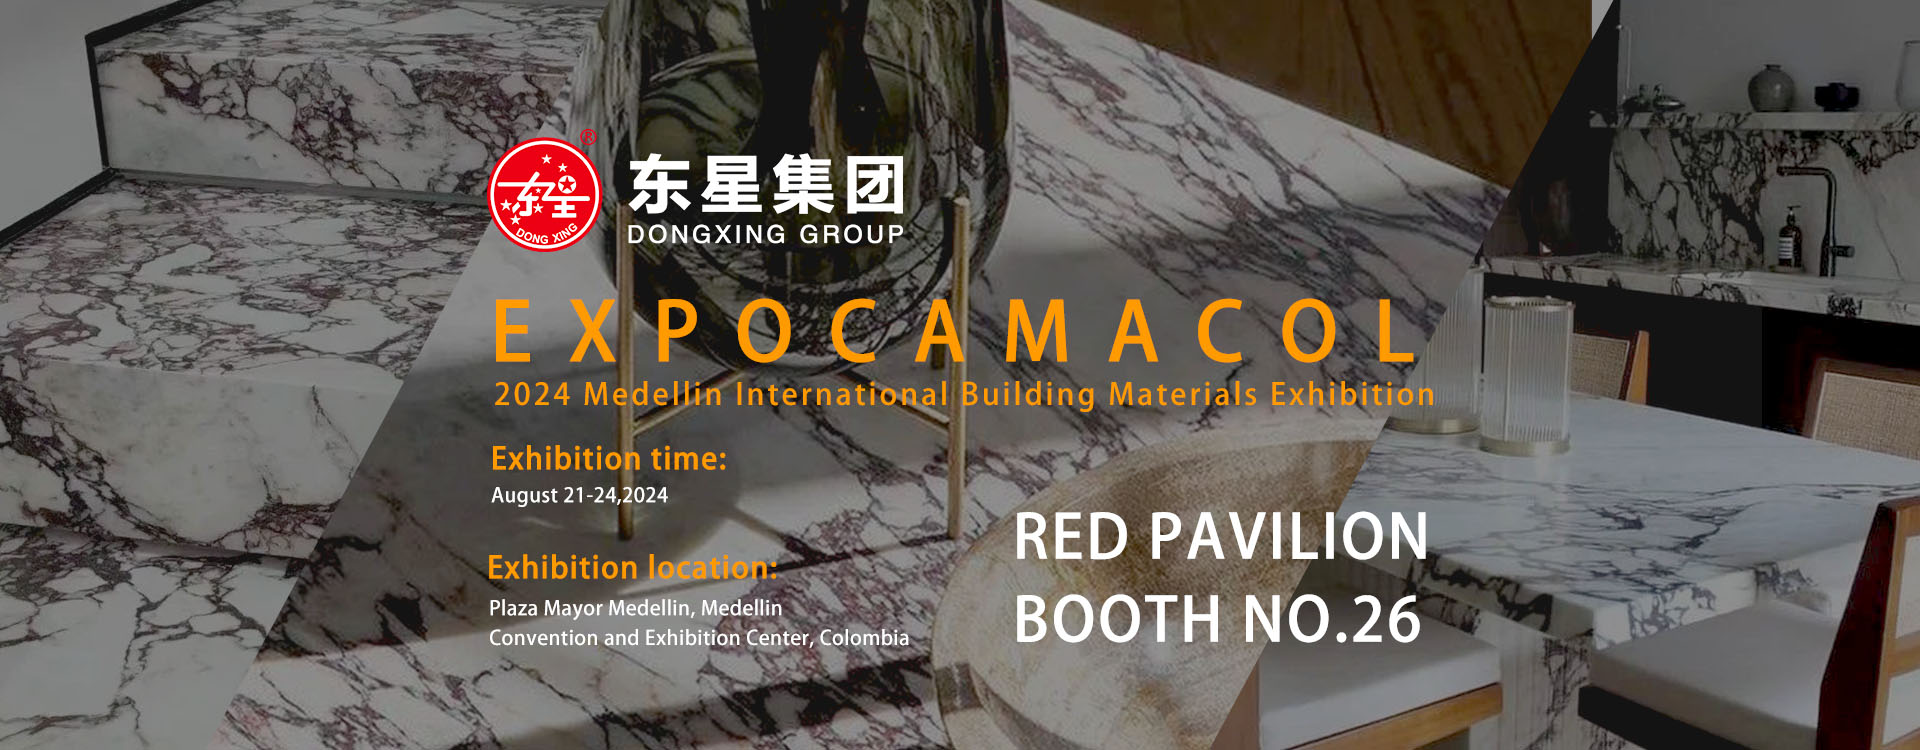 Die Dongxing Group nimmt an der EXPOCAMACOL 2024 teil